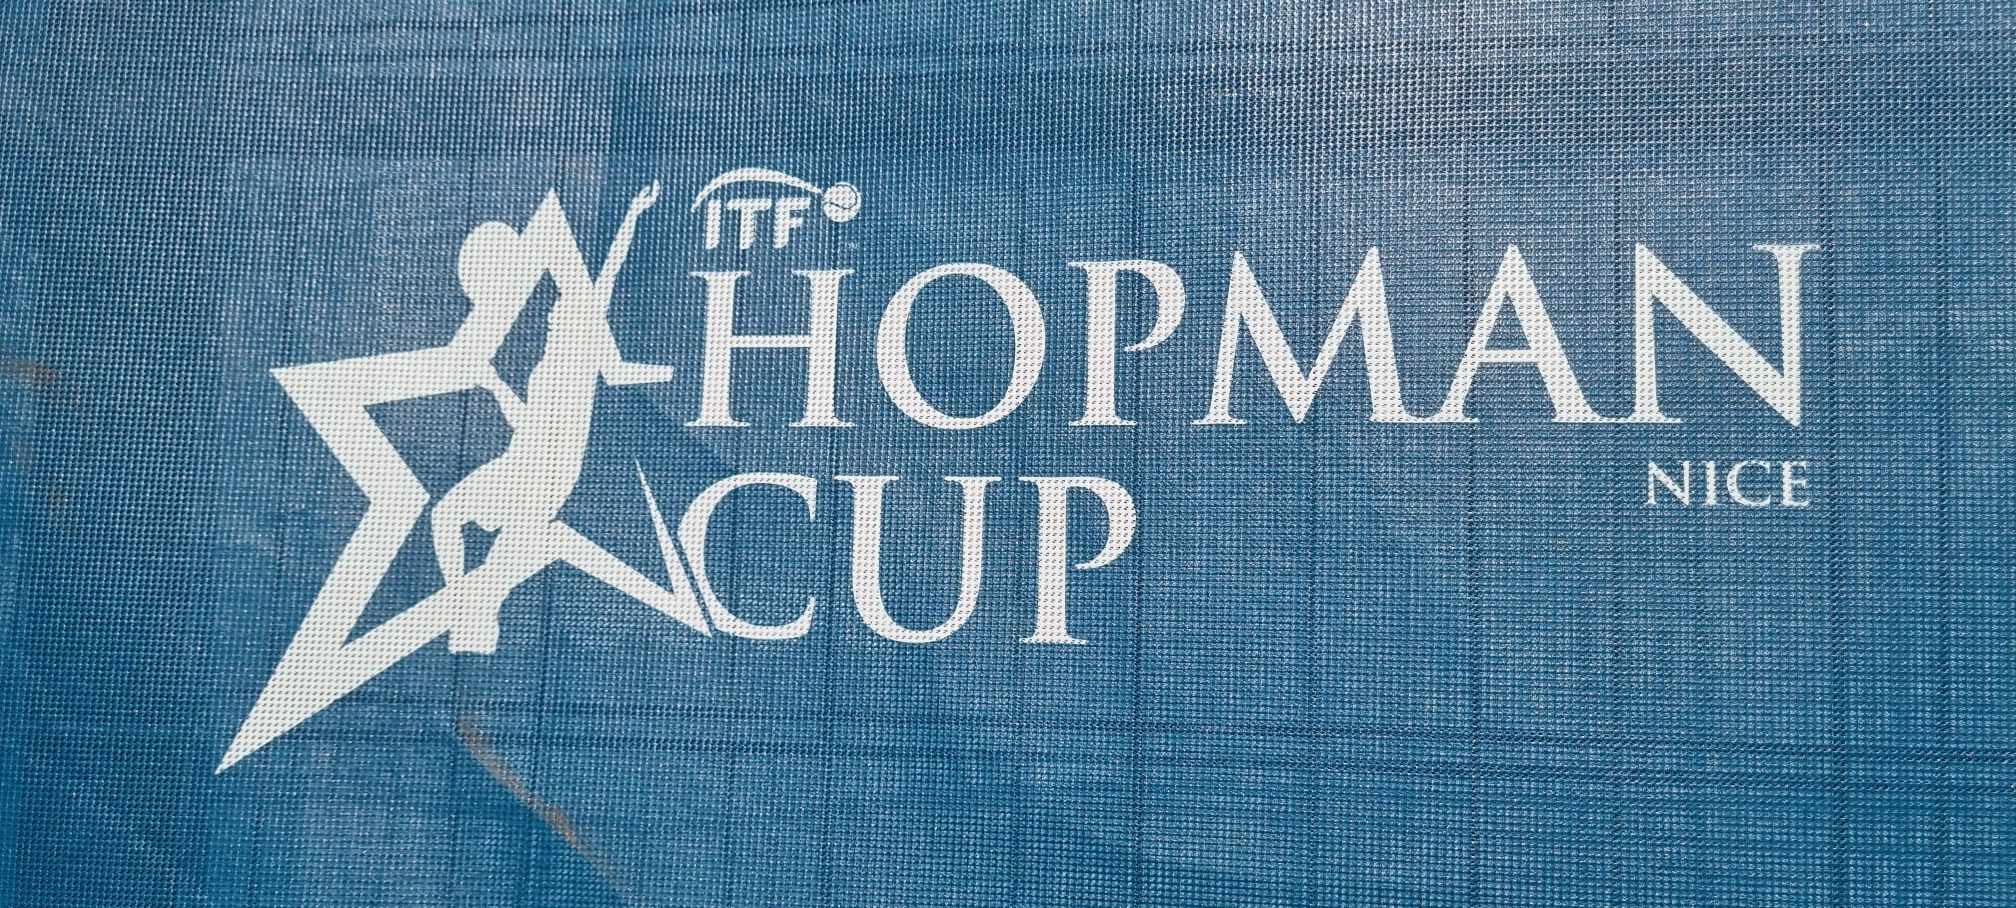 compétition de tennis internationale : Hopman Cup